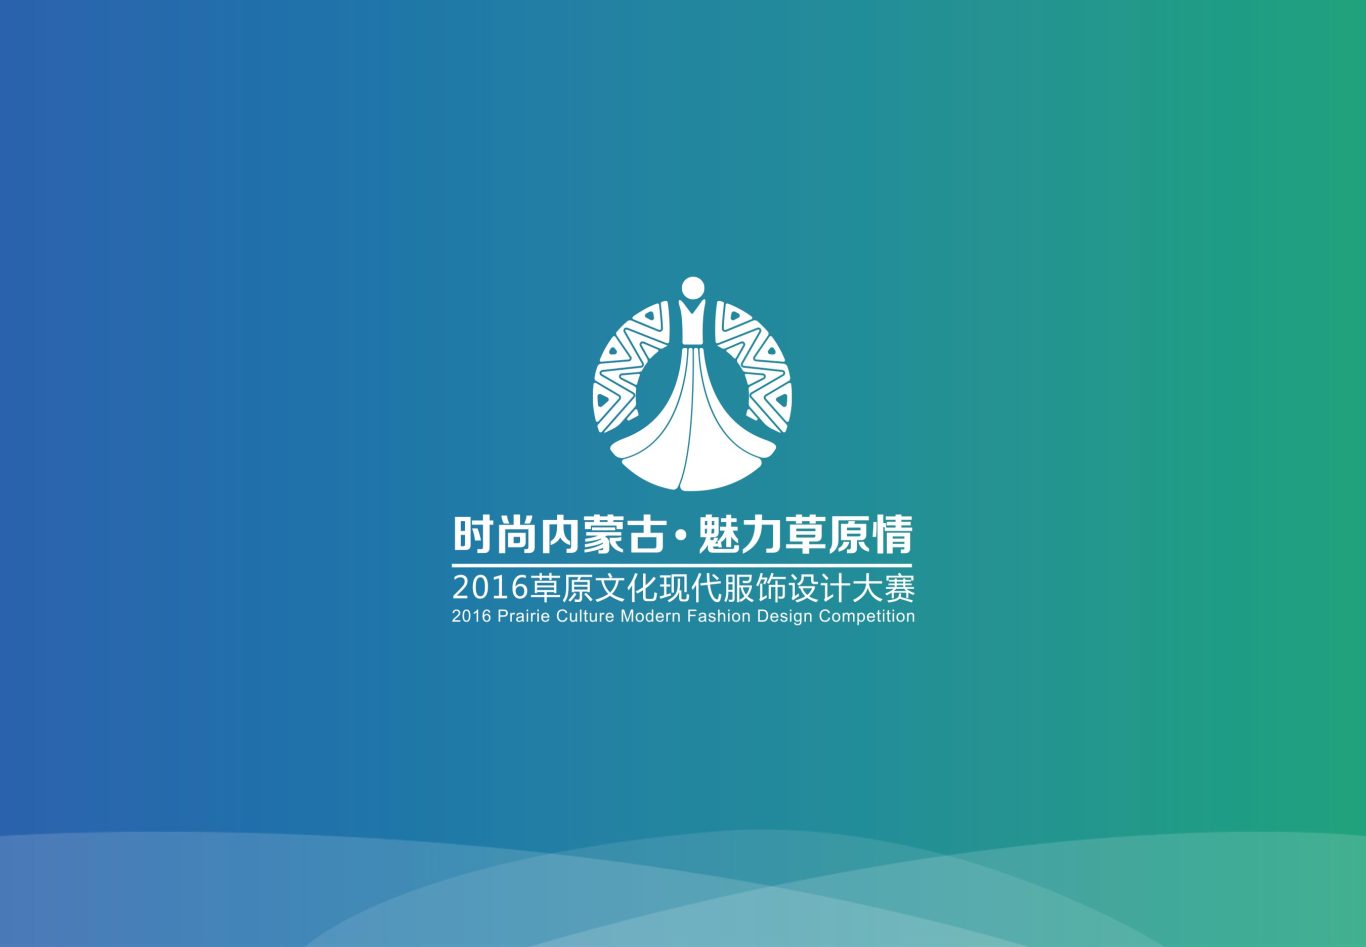 时尚内蒙古 魅力草原情 logo图1